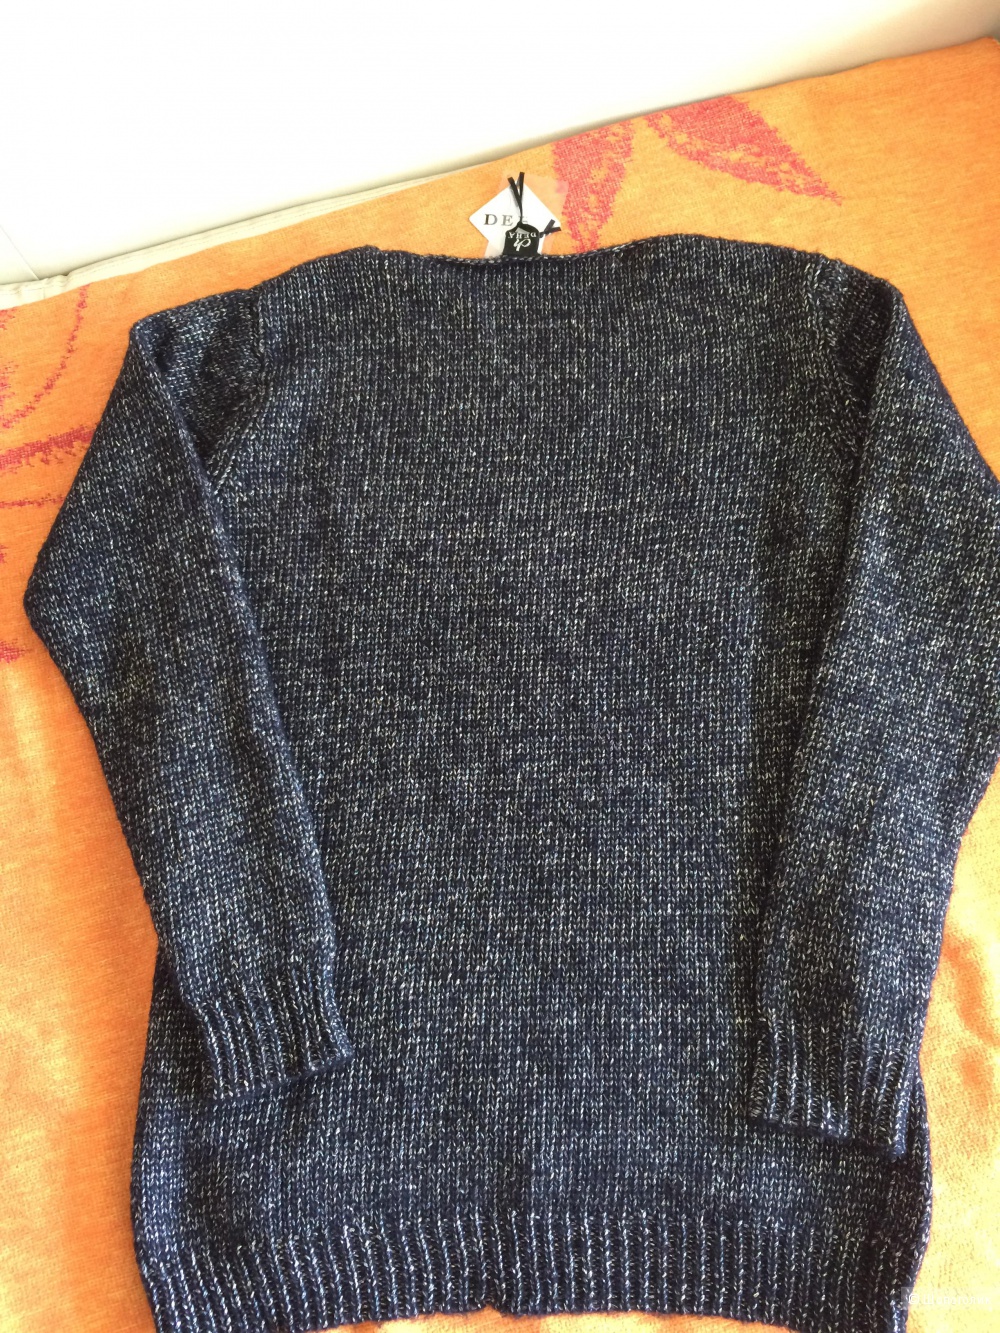 Новый красивый свитер deha размер s,большемерит